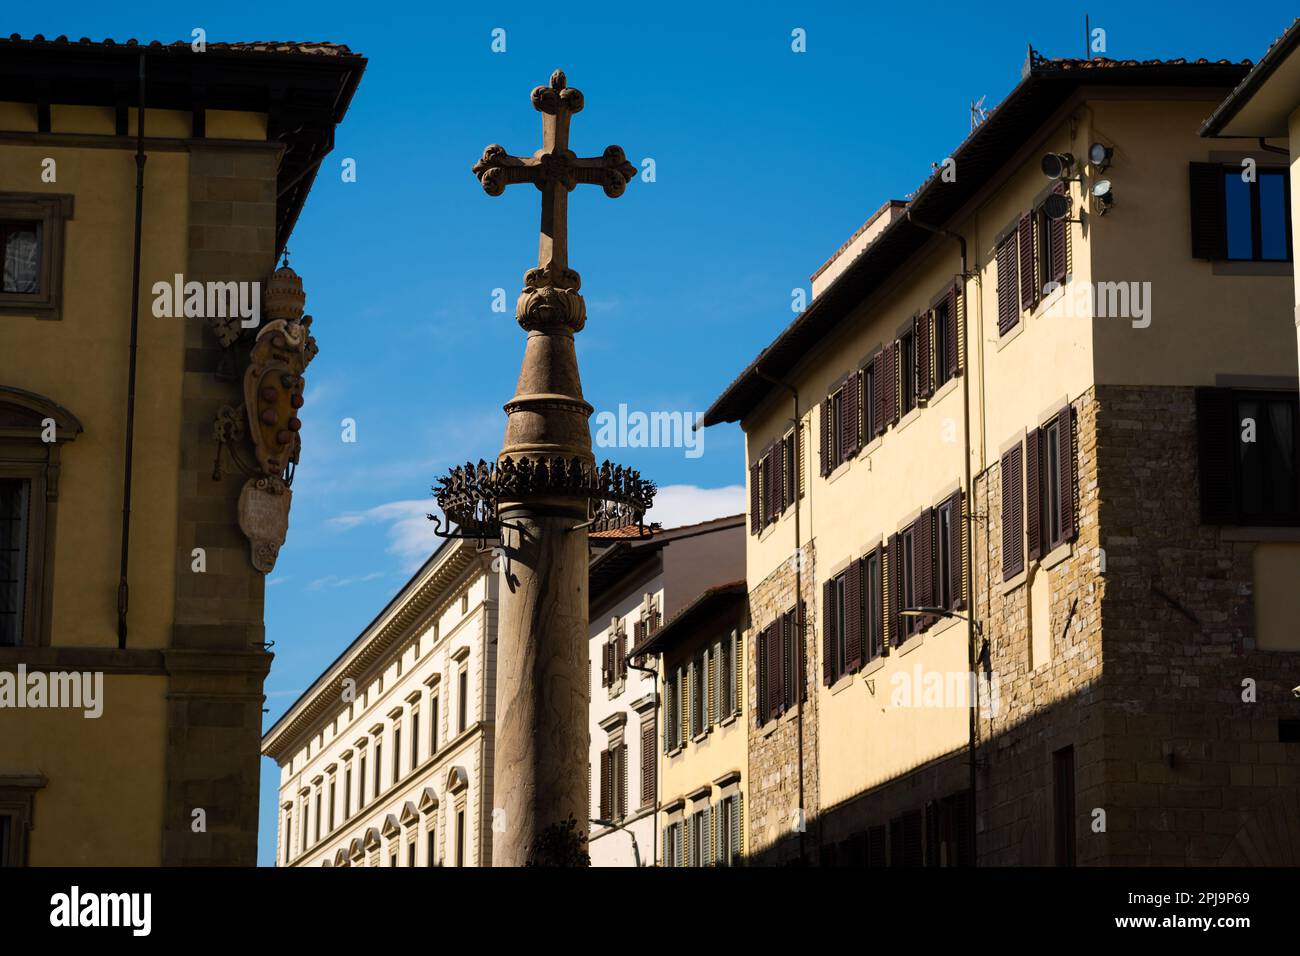 Colonne de Saint Zanobi, une colonne monumentale en marbre, surmontée d'une croix au-dessus d'une couronne de feu, Florence, Italie Banque D'Images